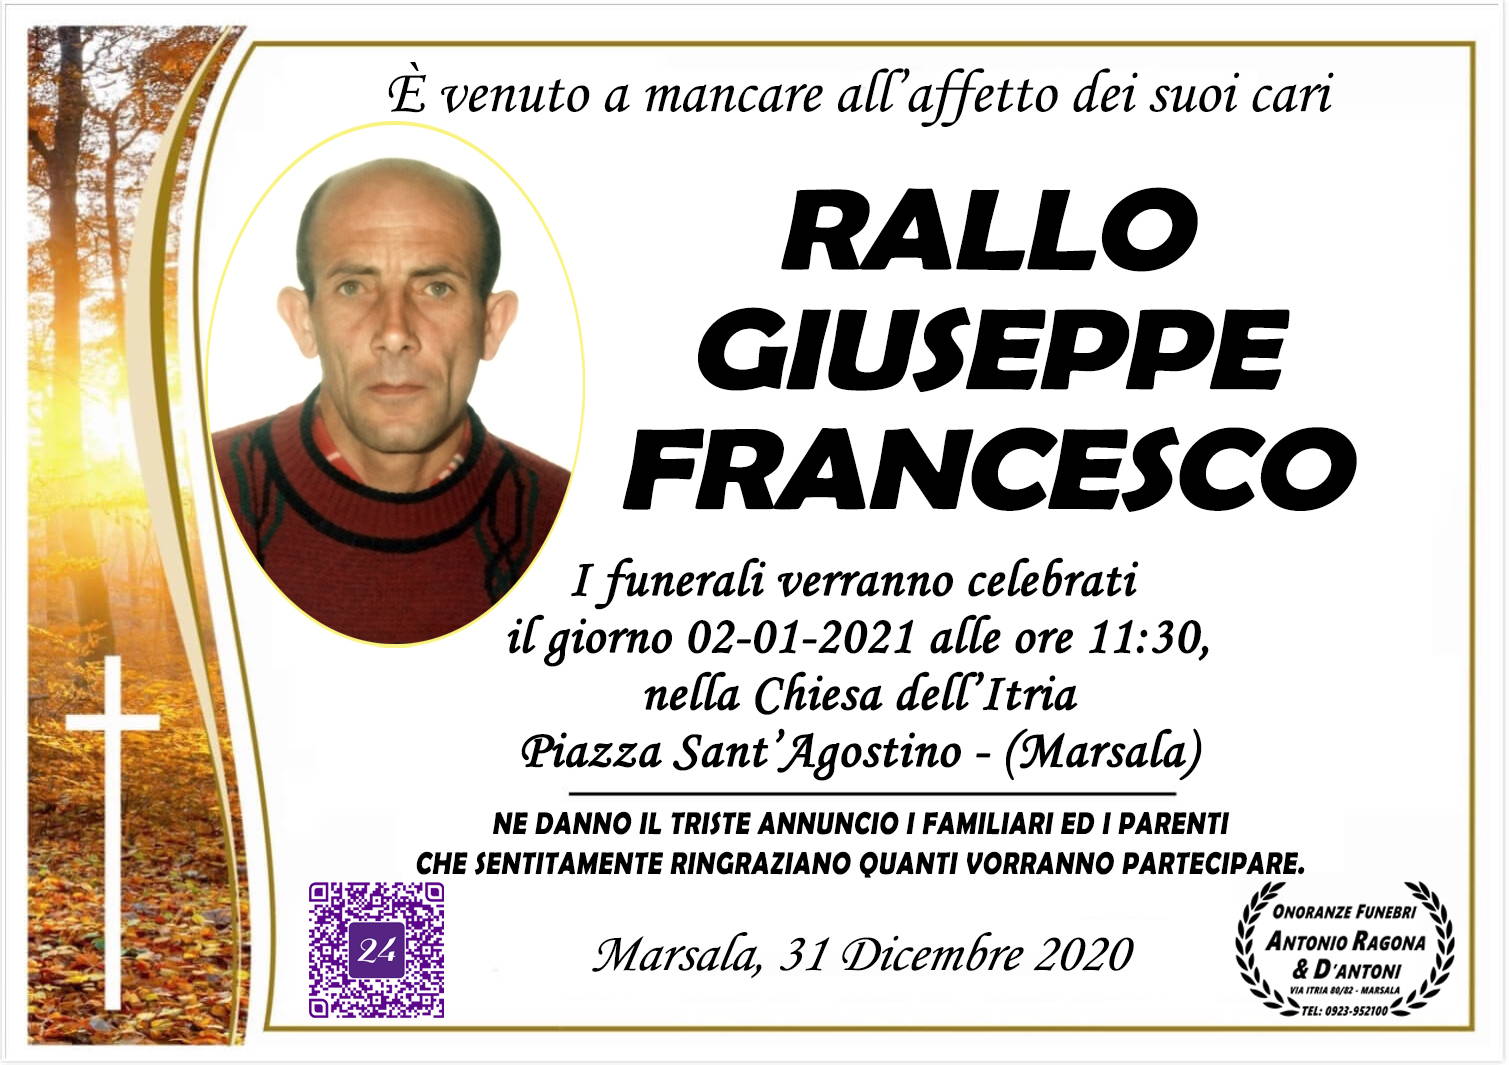 Giuseppe Francesco Rallo